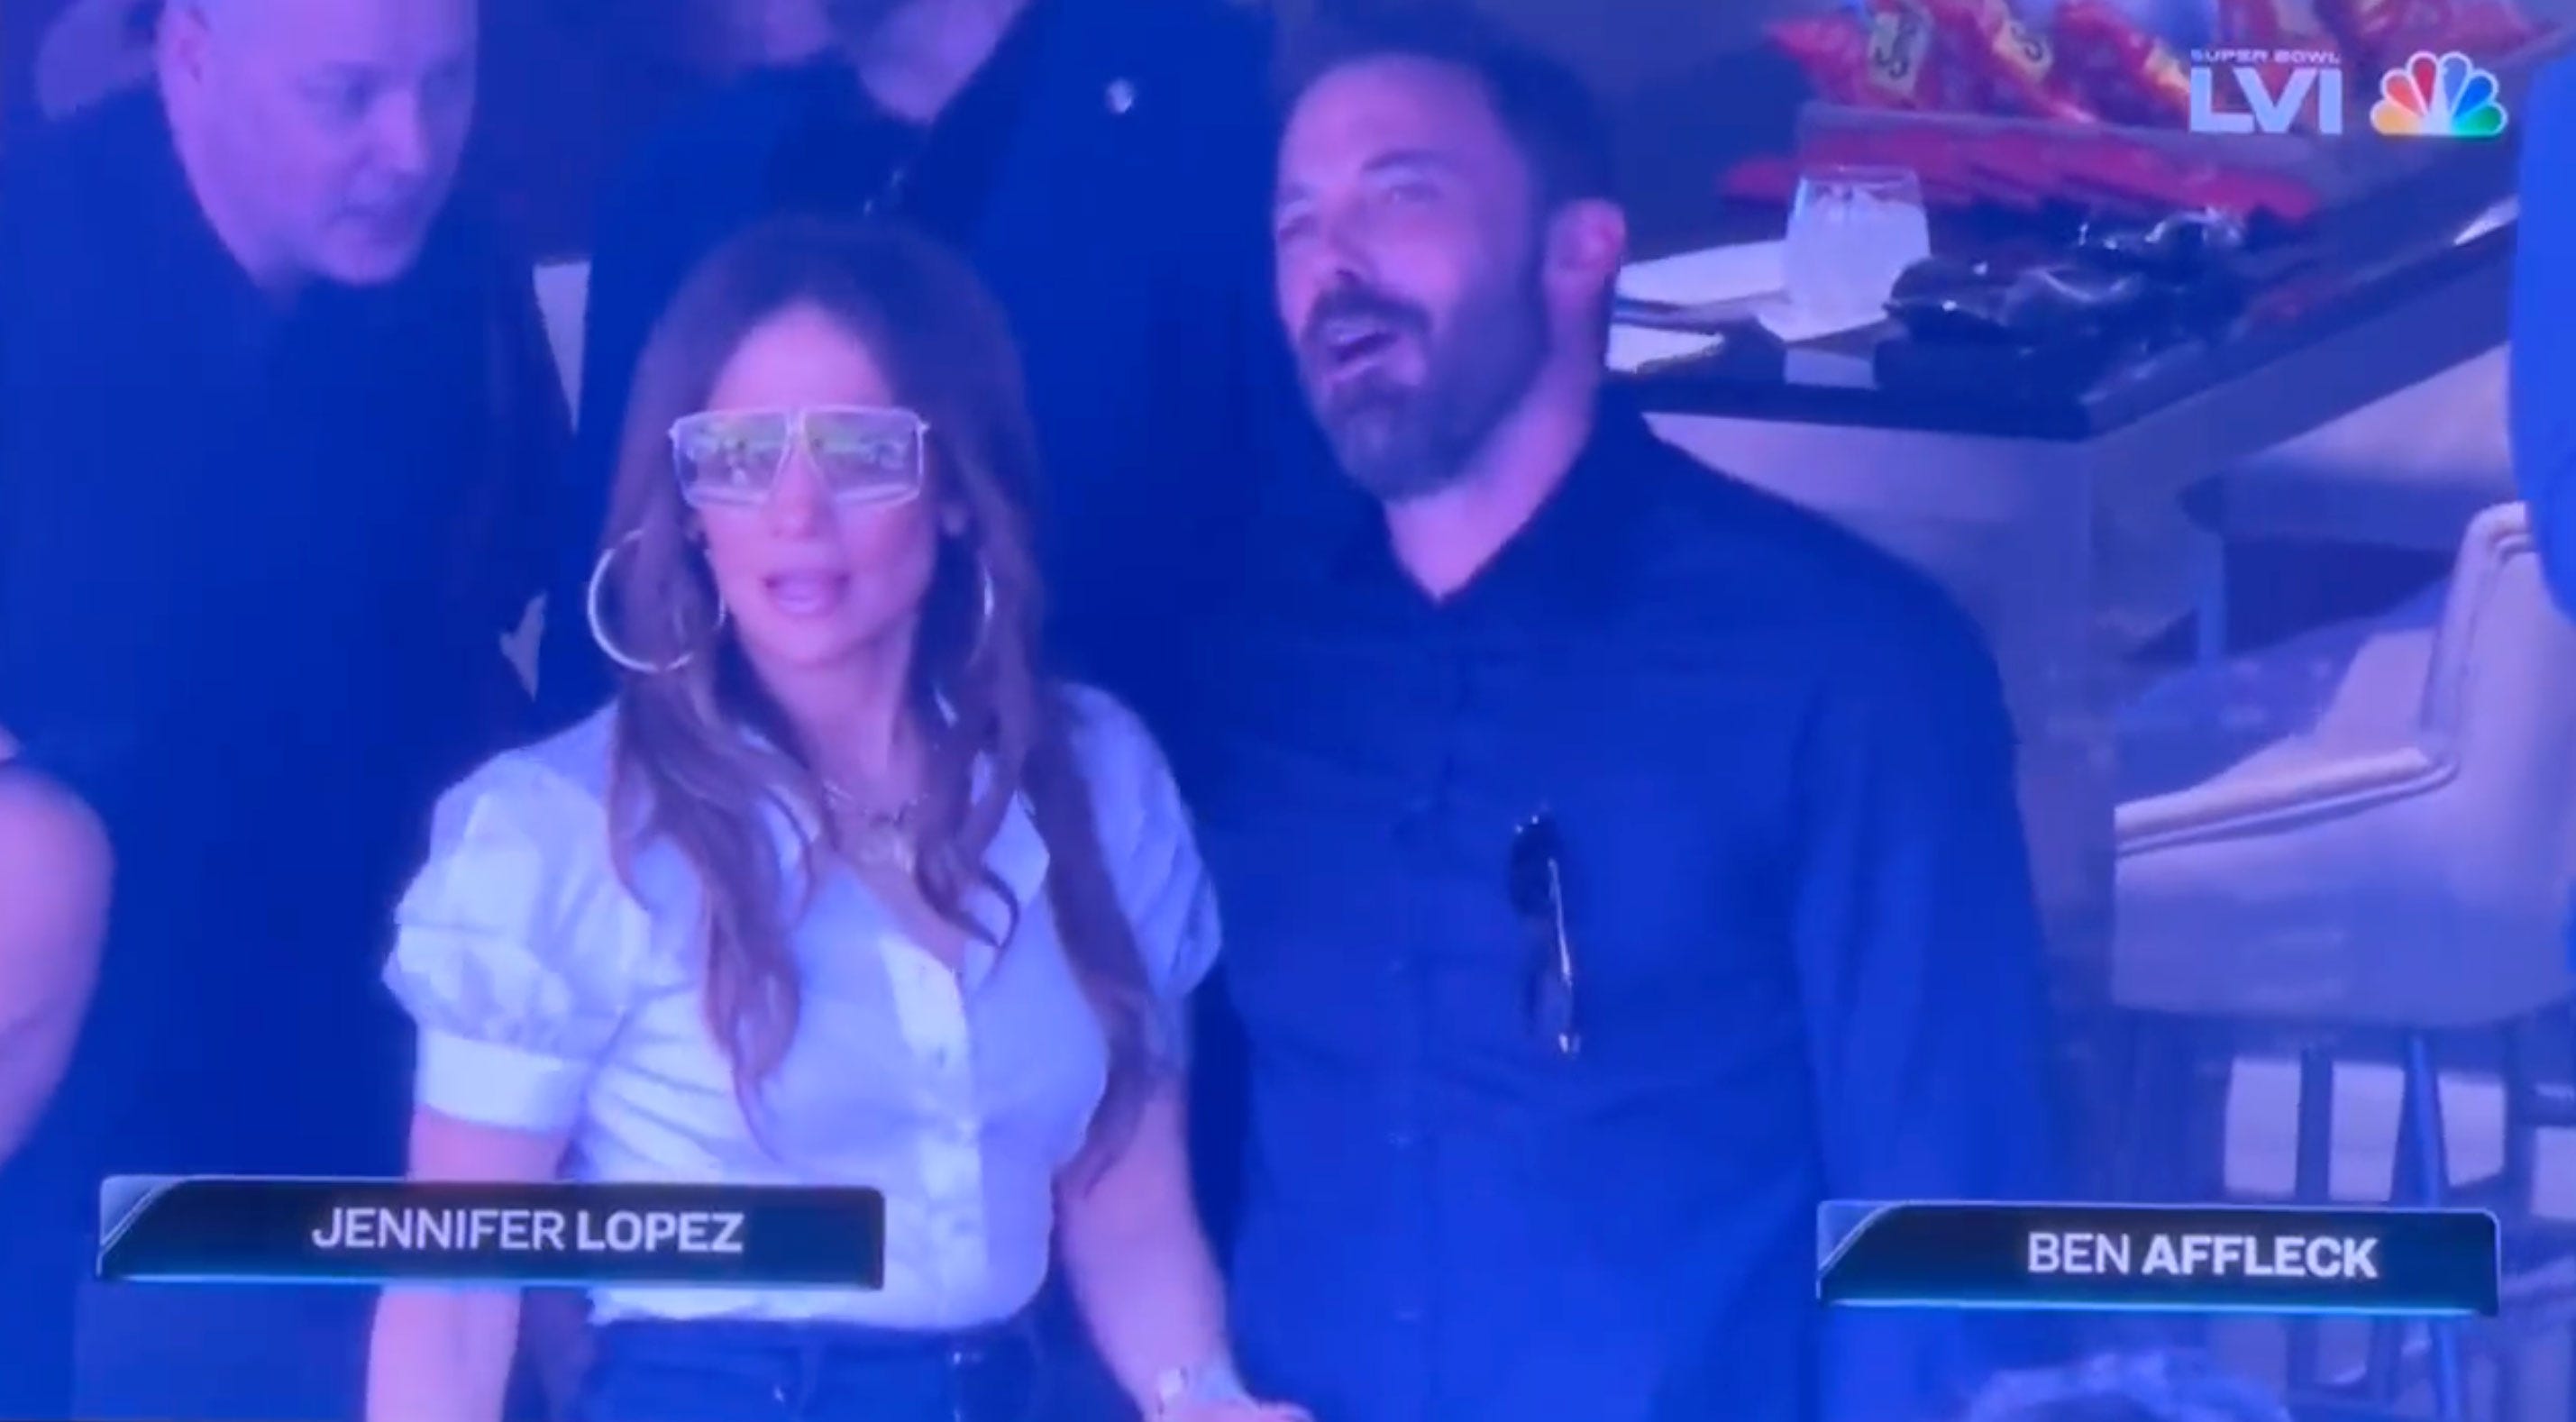 See Ben Affleck and Jennifer Lopez on Date at Super Bowl 2022